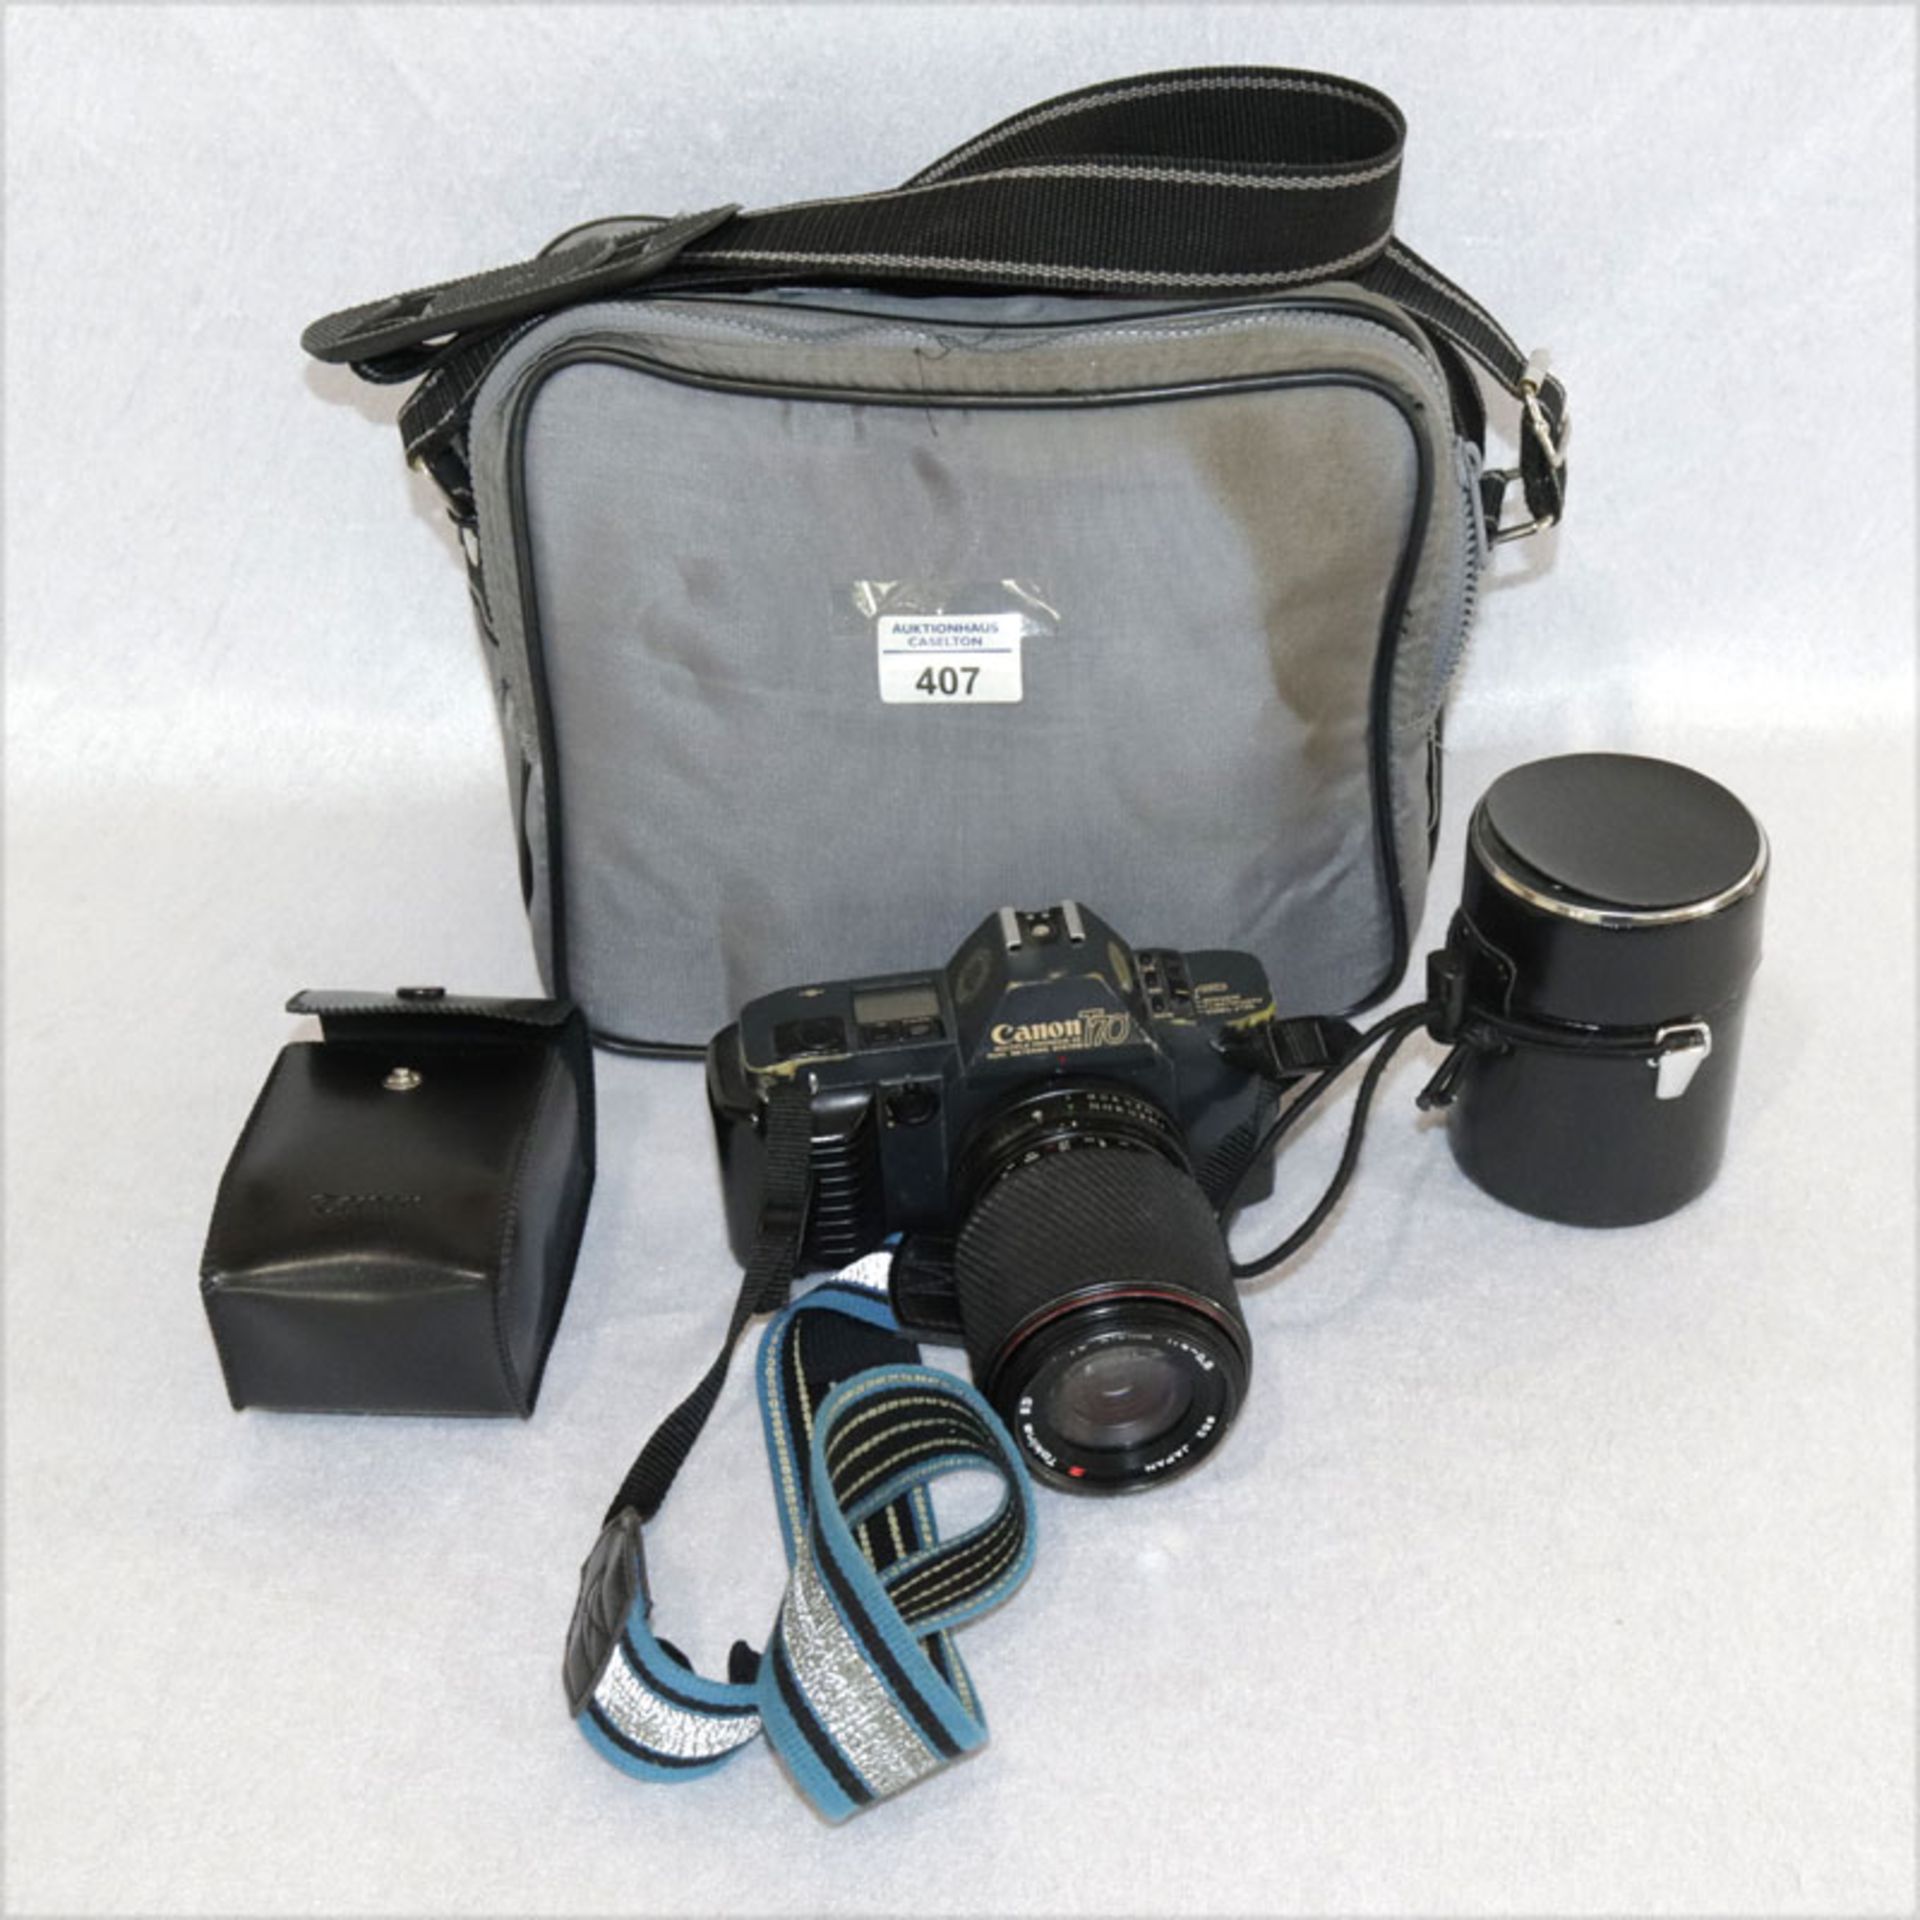 Fotokamera Canon T 70 mit Objektiven, Blitz und Tasche, Gebrauchsspuren